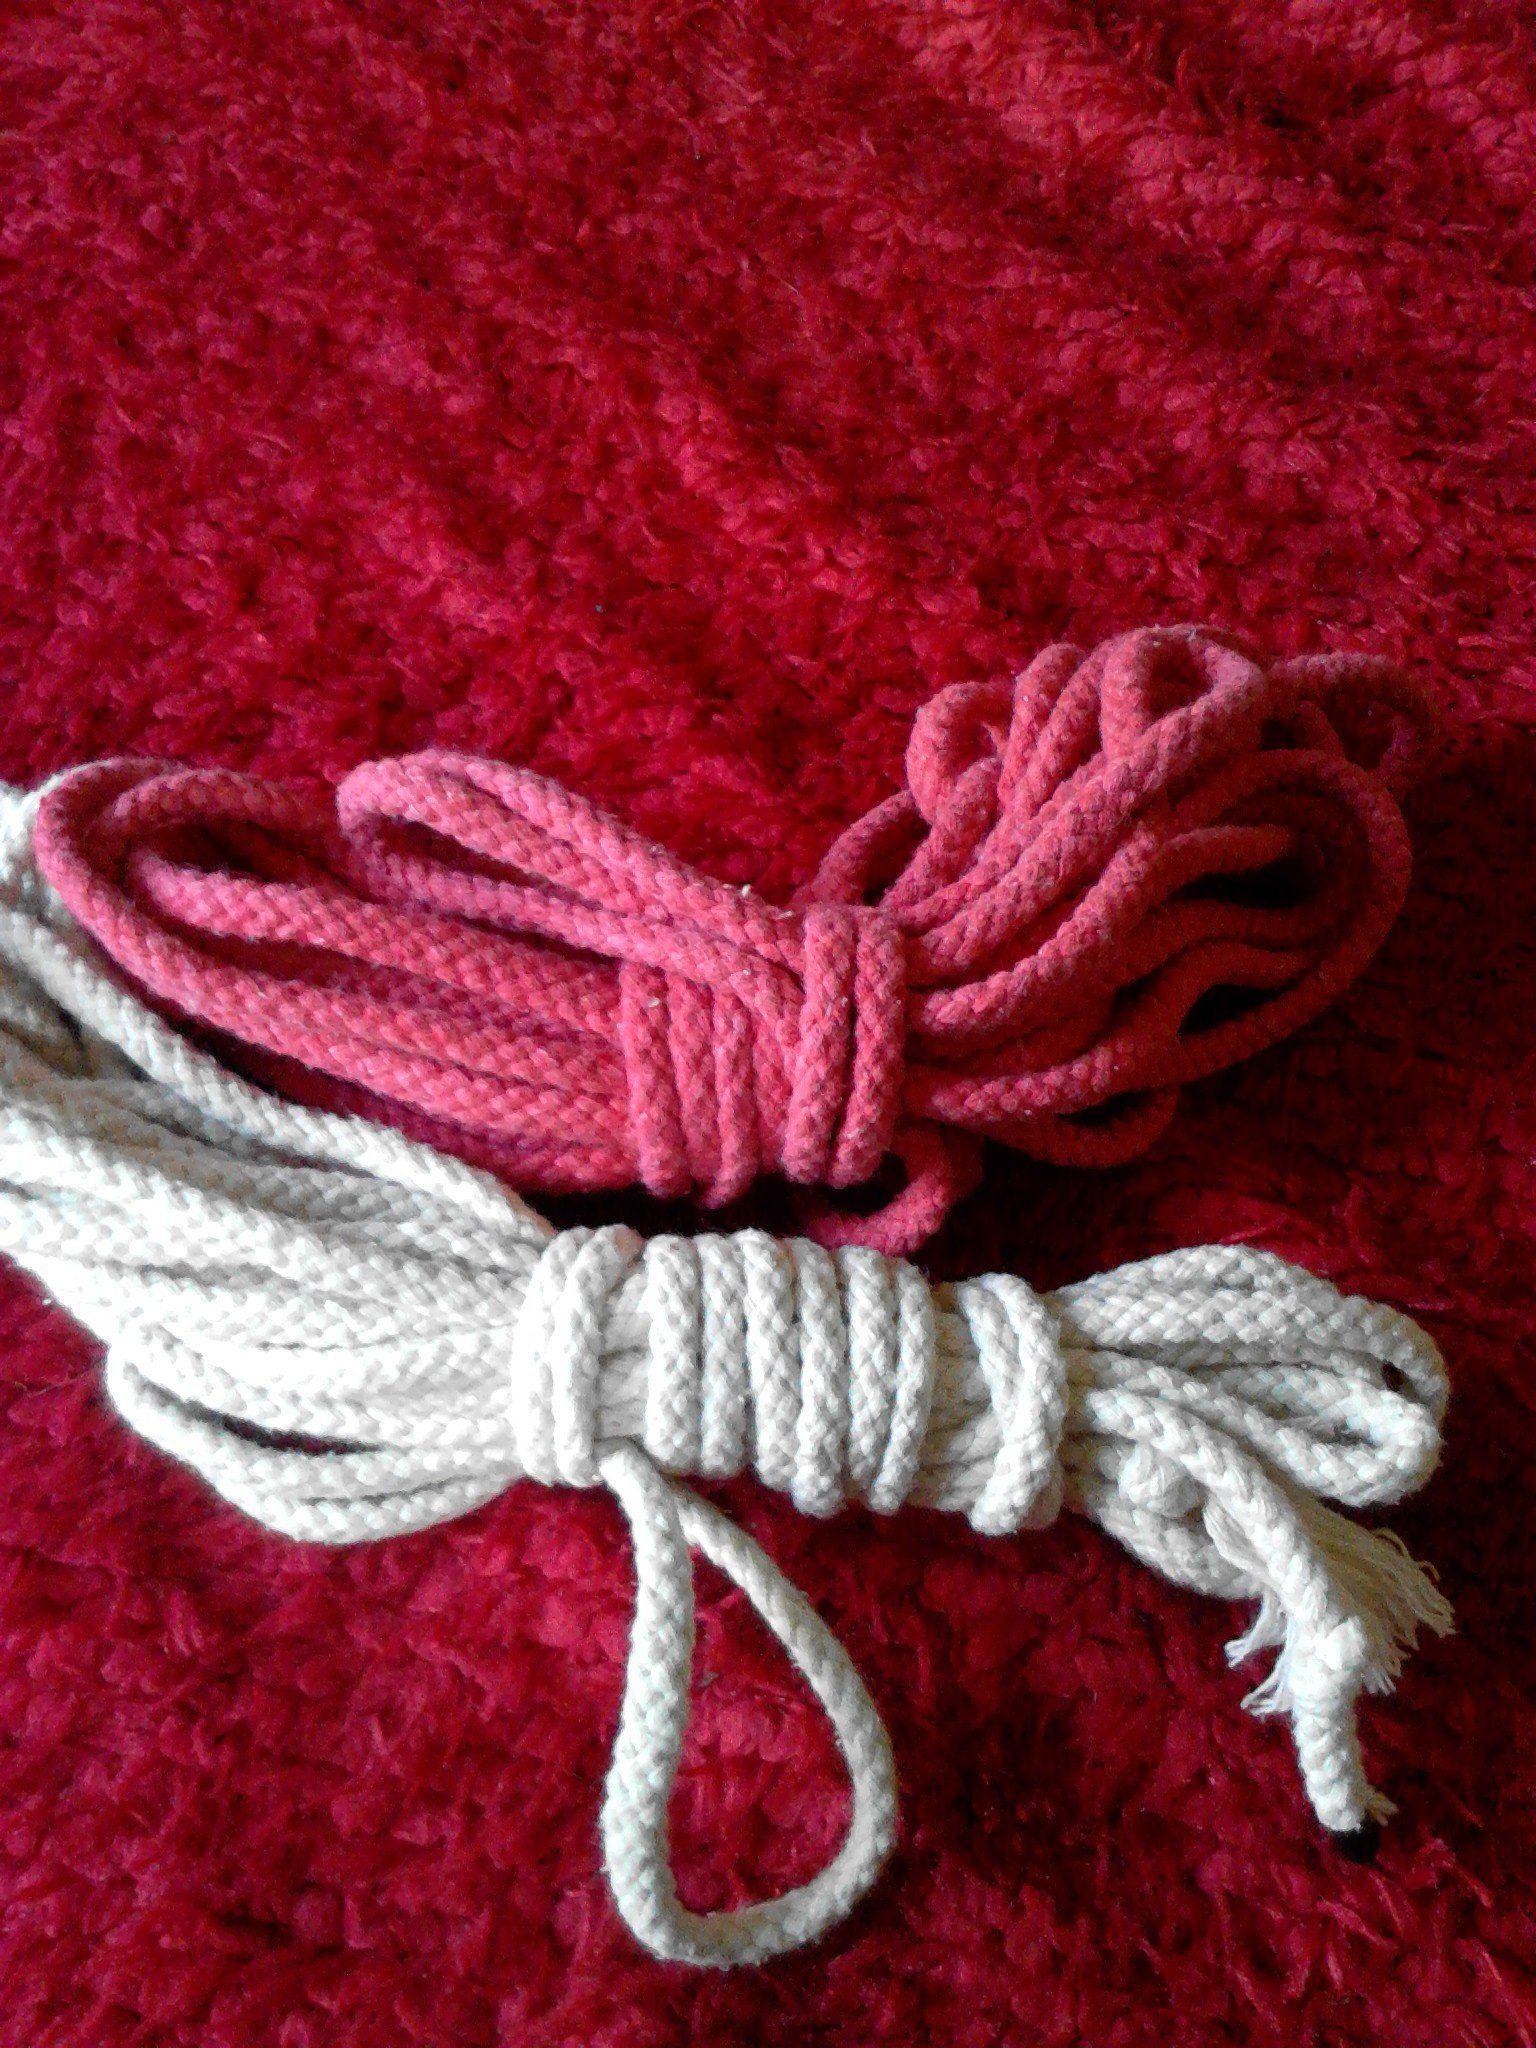 Rope for bondage 